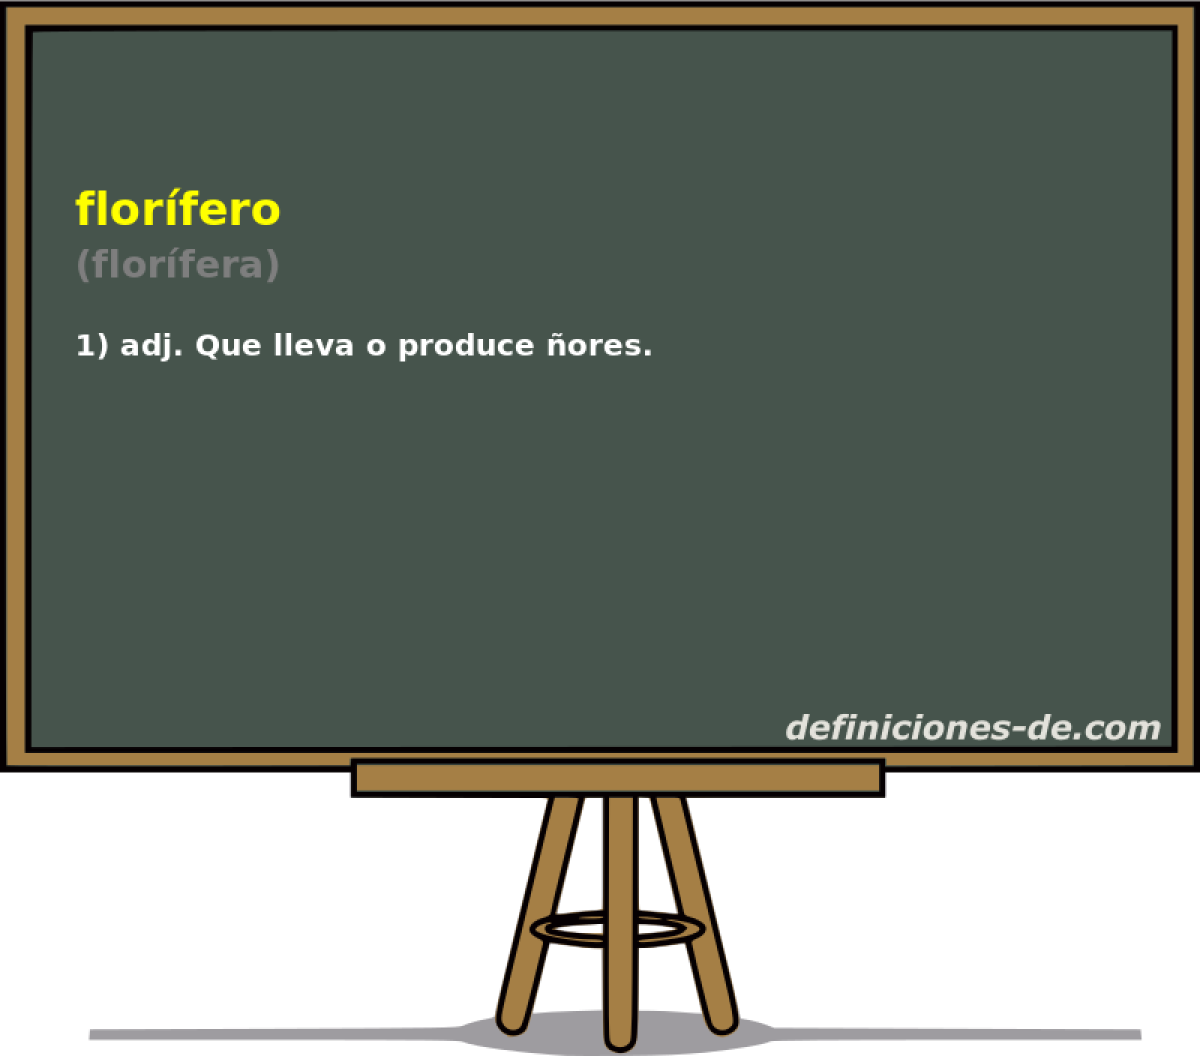 florfero (florfera)